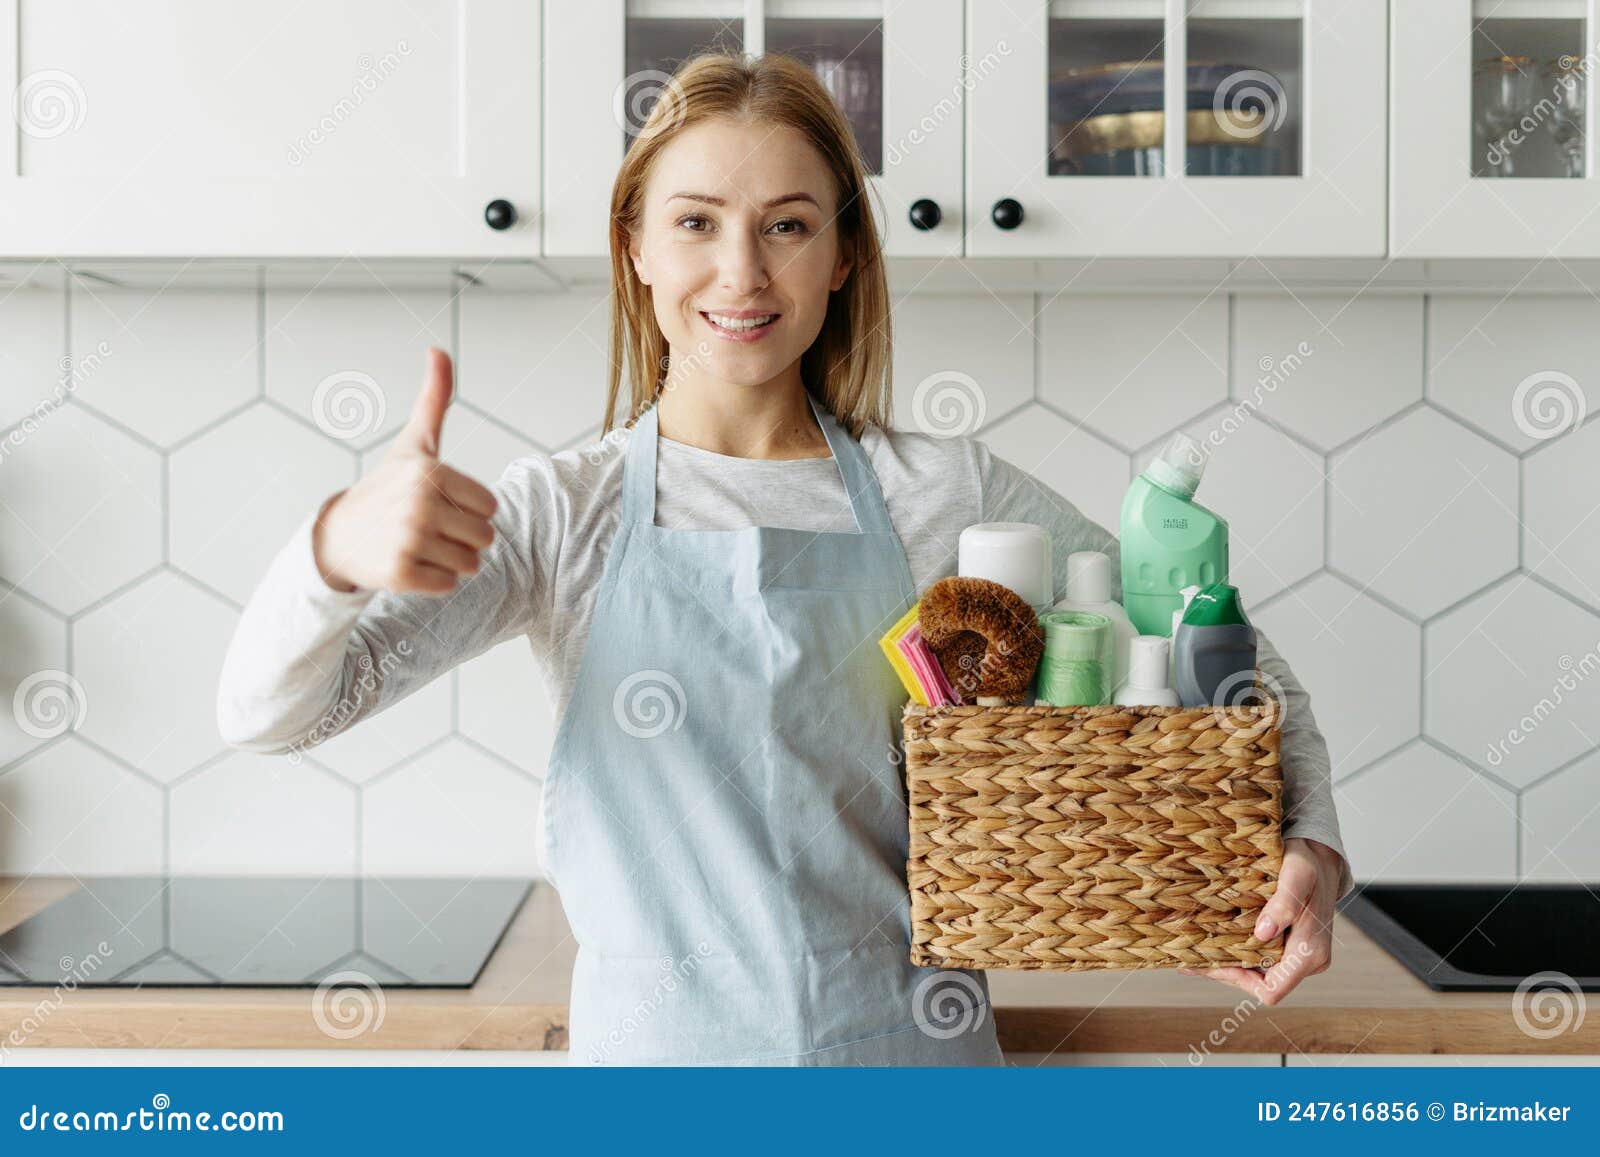 Mulher recomenda produtos de limpeza mostrando polegares para cima. Linda mulher em avental segurando uma caixa com detergentes e trapos prontos para limpar sua casa. trabalhador de serviços de limpeza recomenda produtos químicos domésticos mostrando polegares para cima e sorrindo publicidade ampla